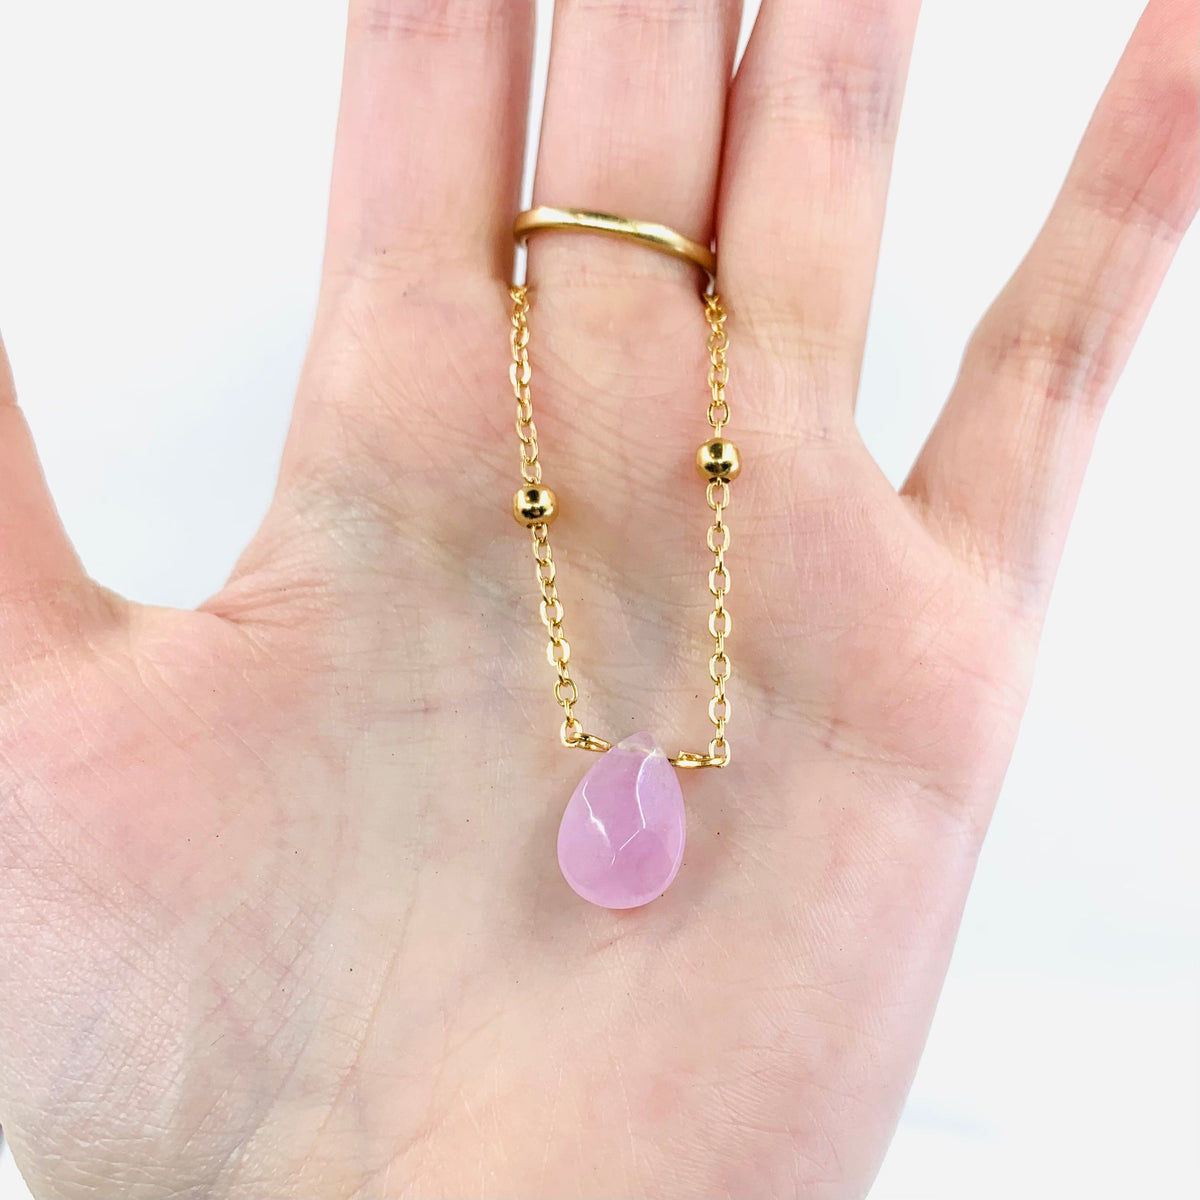 Teardrop Gem Lilac Necklace Jewelry - 